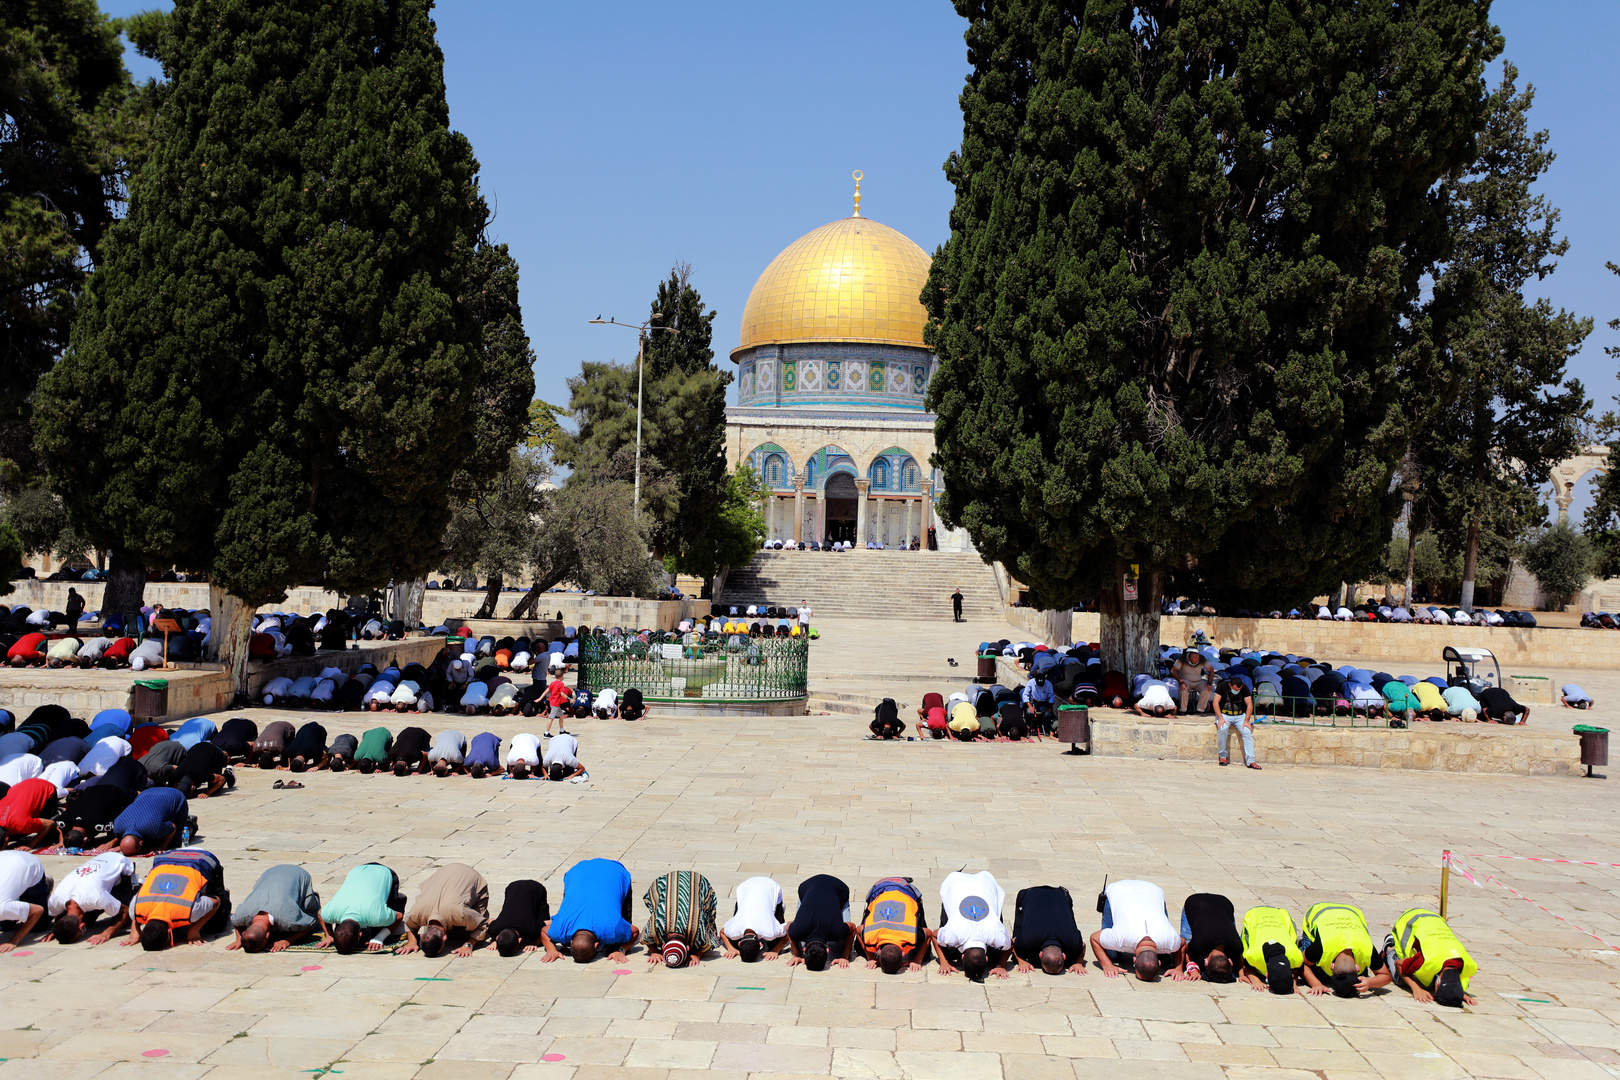 إسرائيل تبعد مسؤولا دينيا عن المسجد الأقصى 6 أشهر